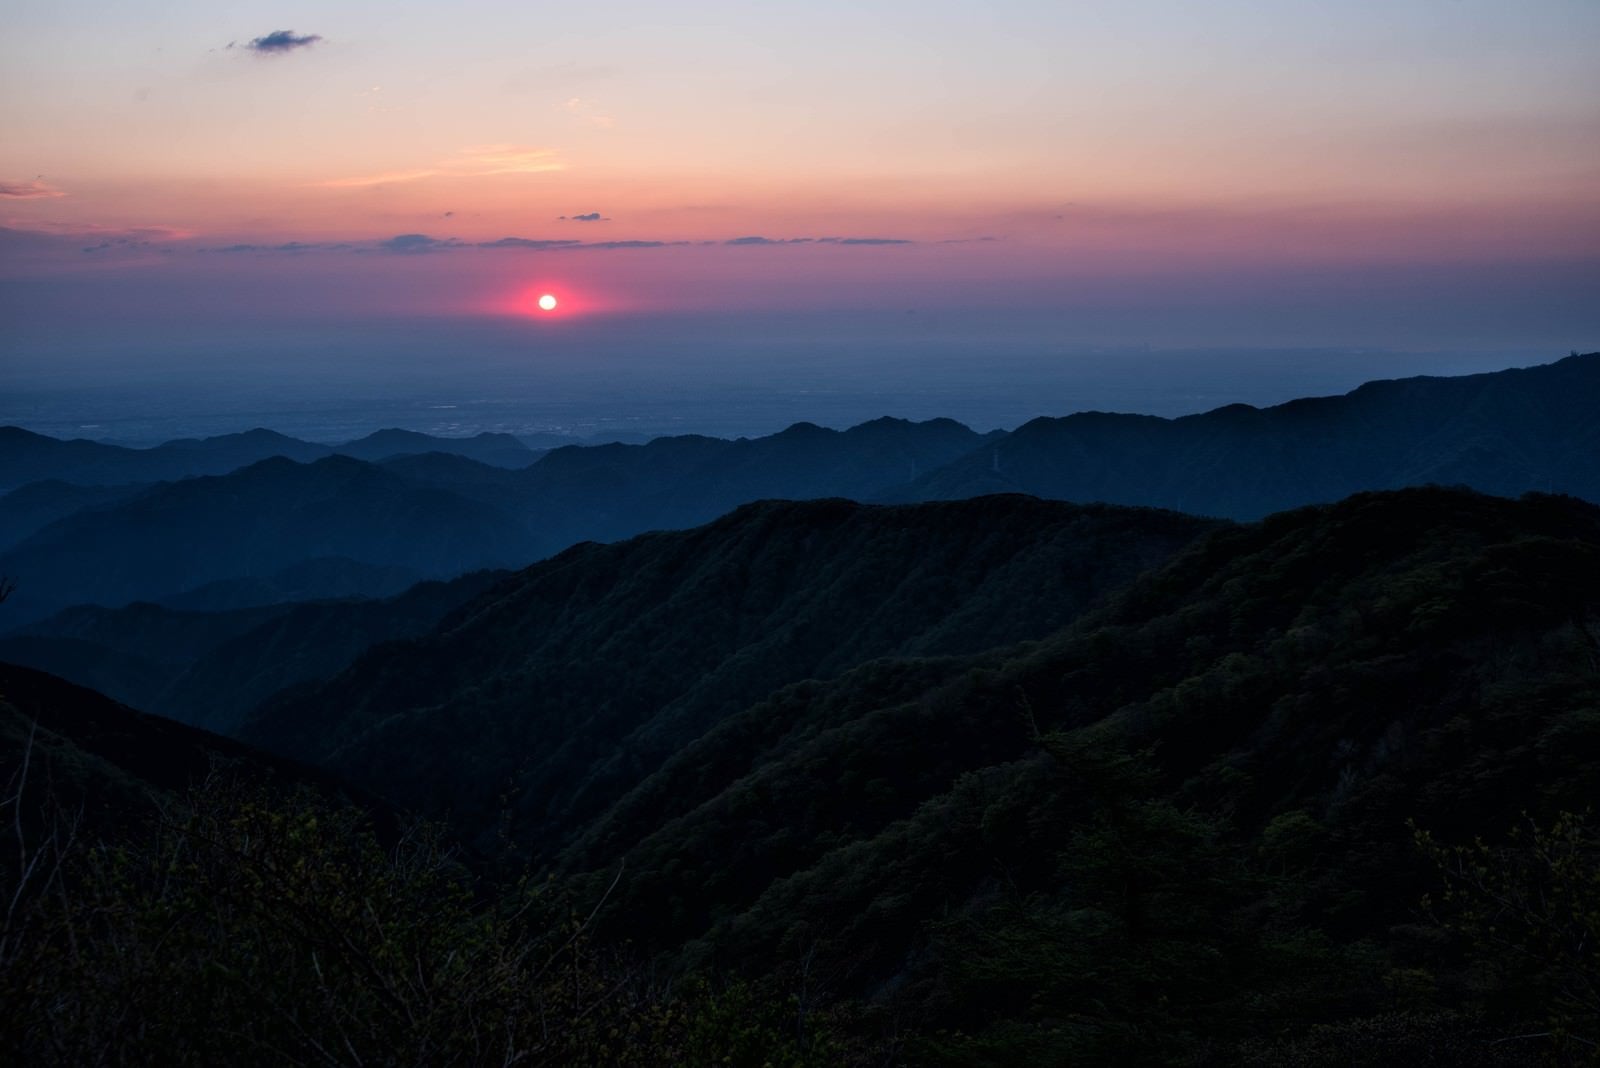 「朝焼けに染まる空と丹沢の朝日」の写真